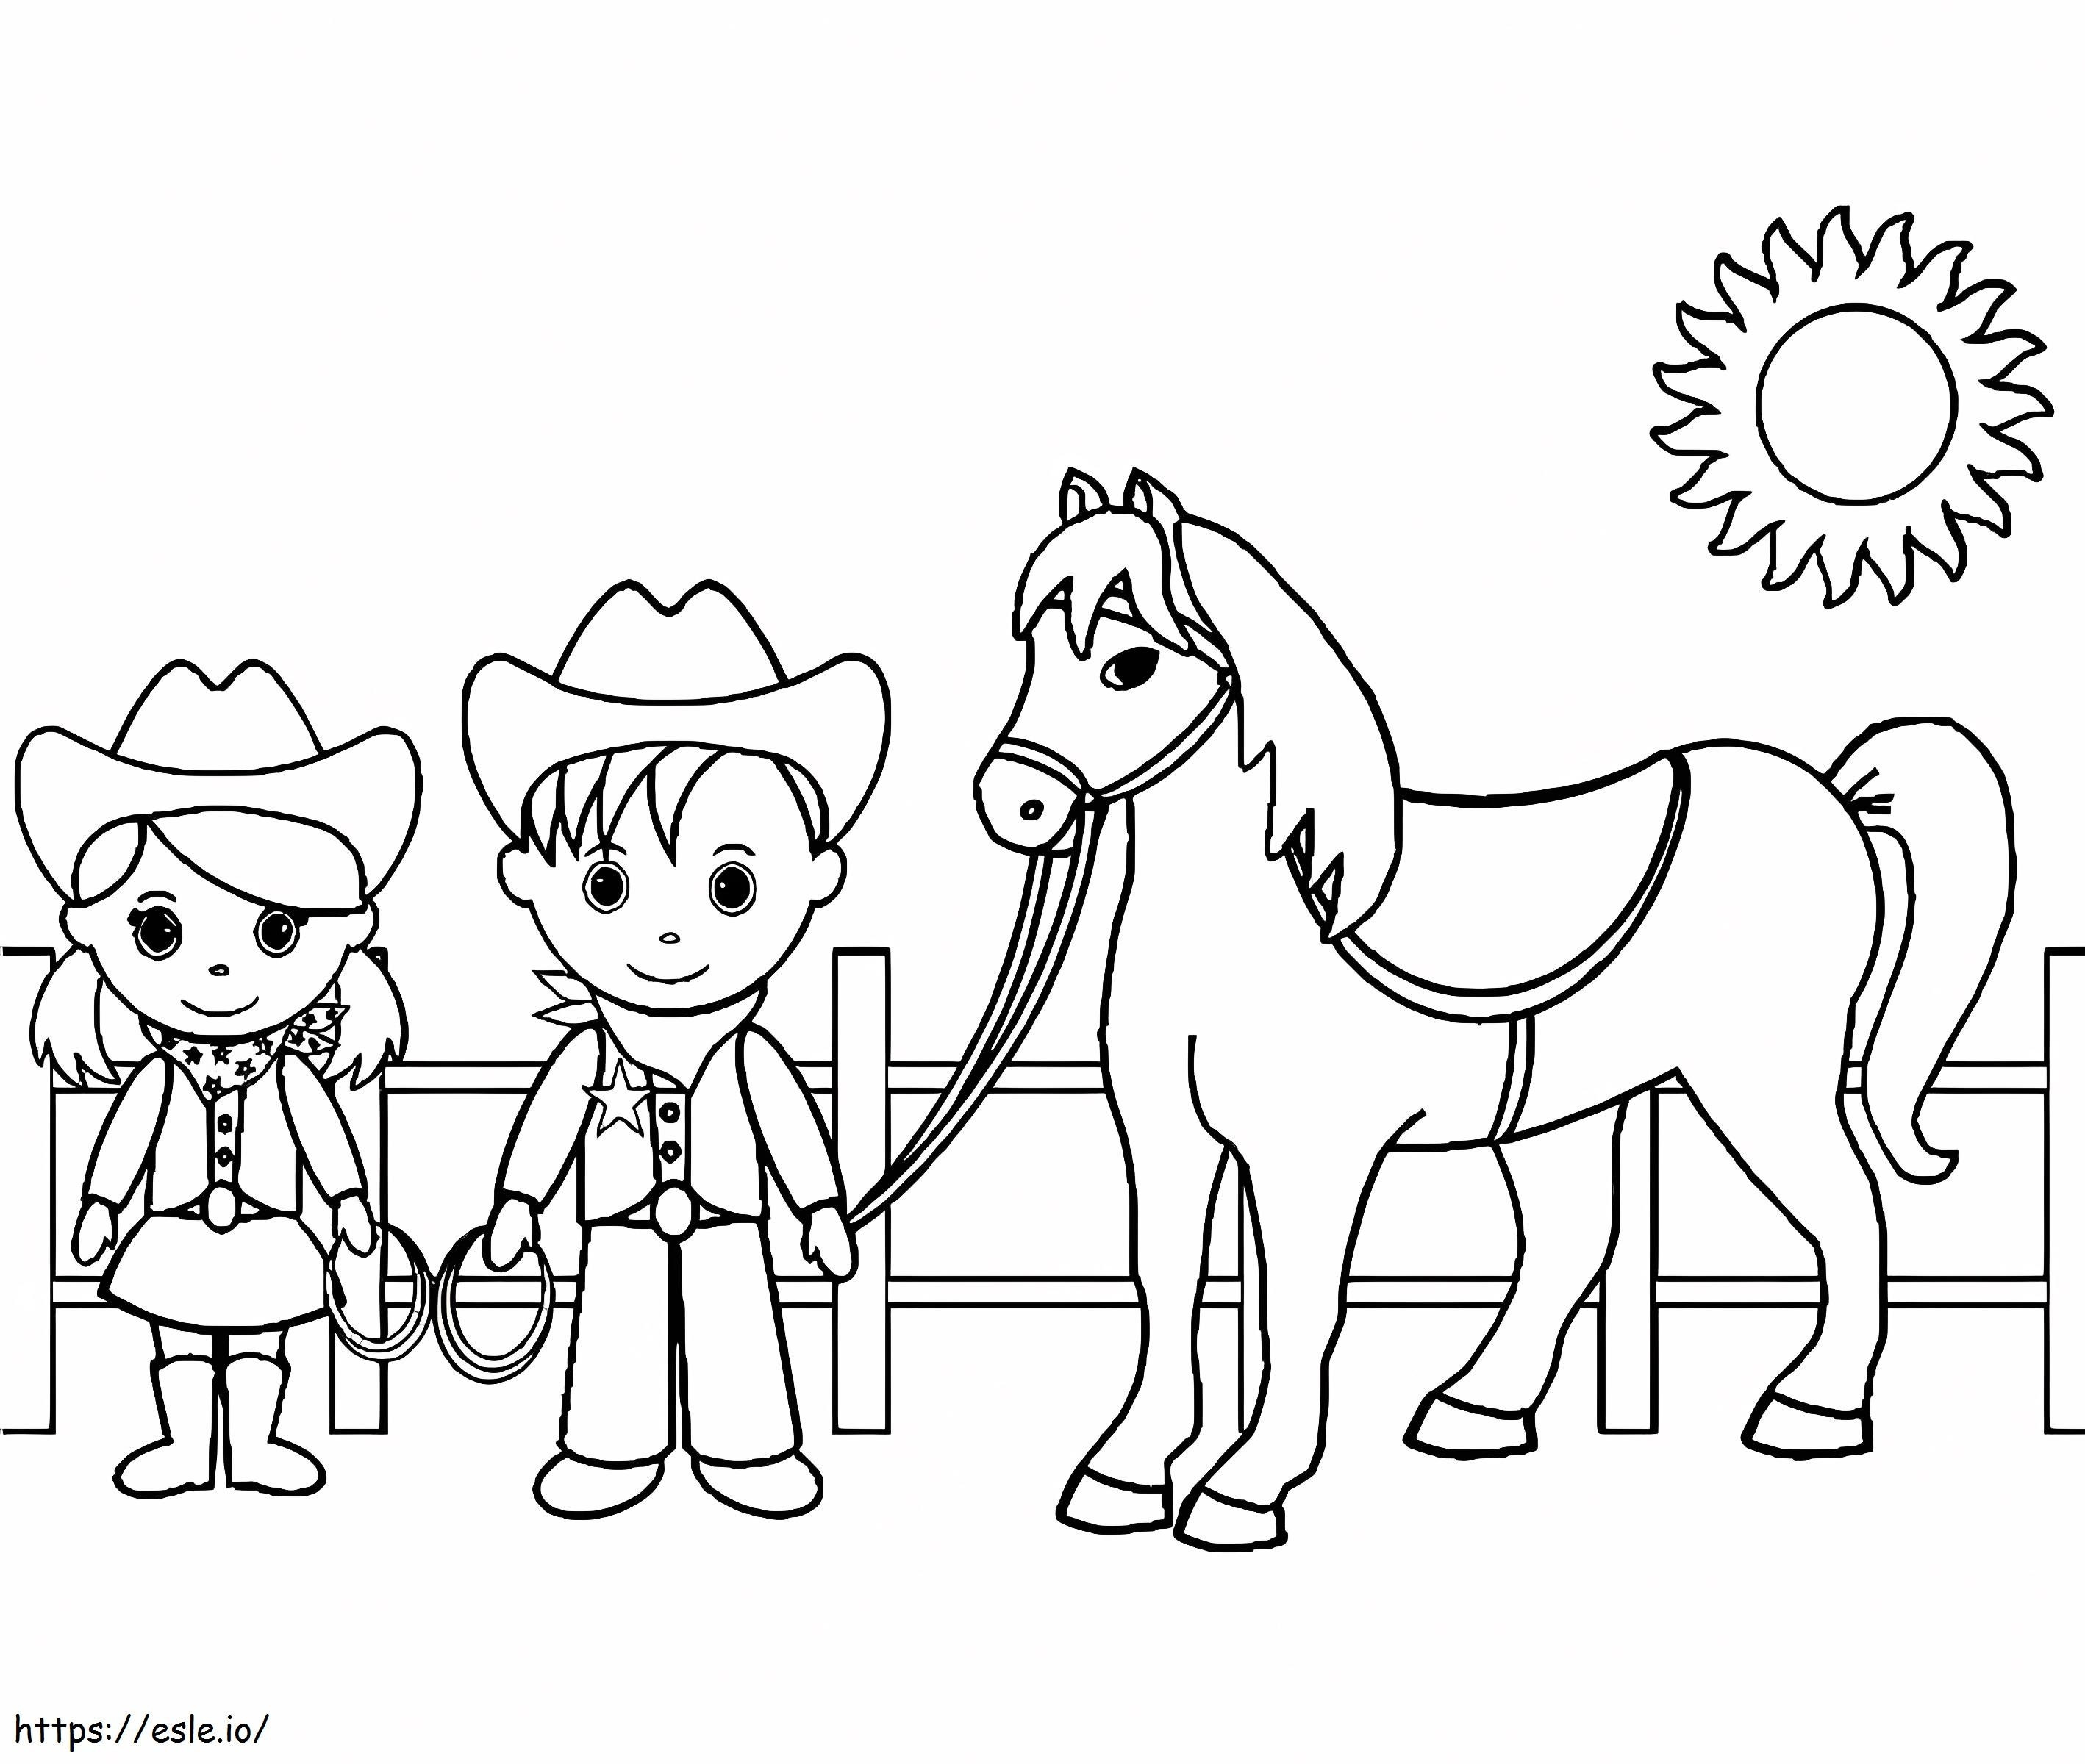 Zwei Cowboys mit Pferd ausmalbilder